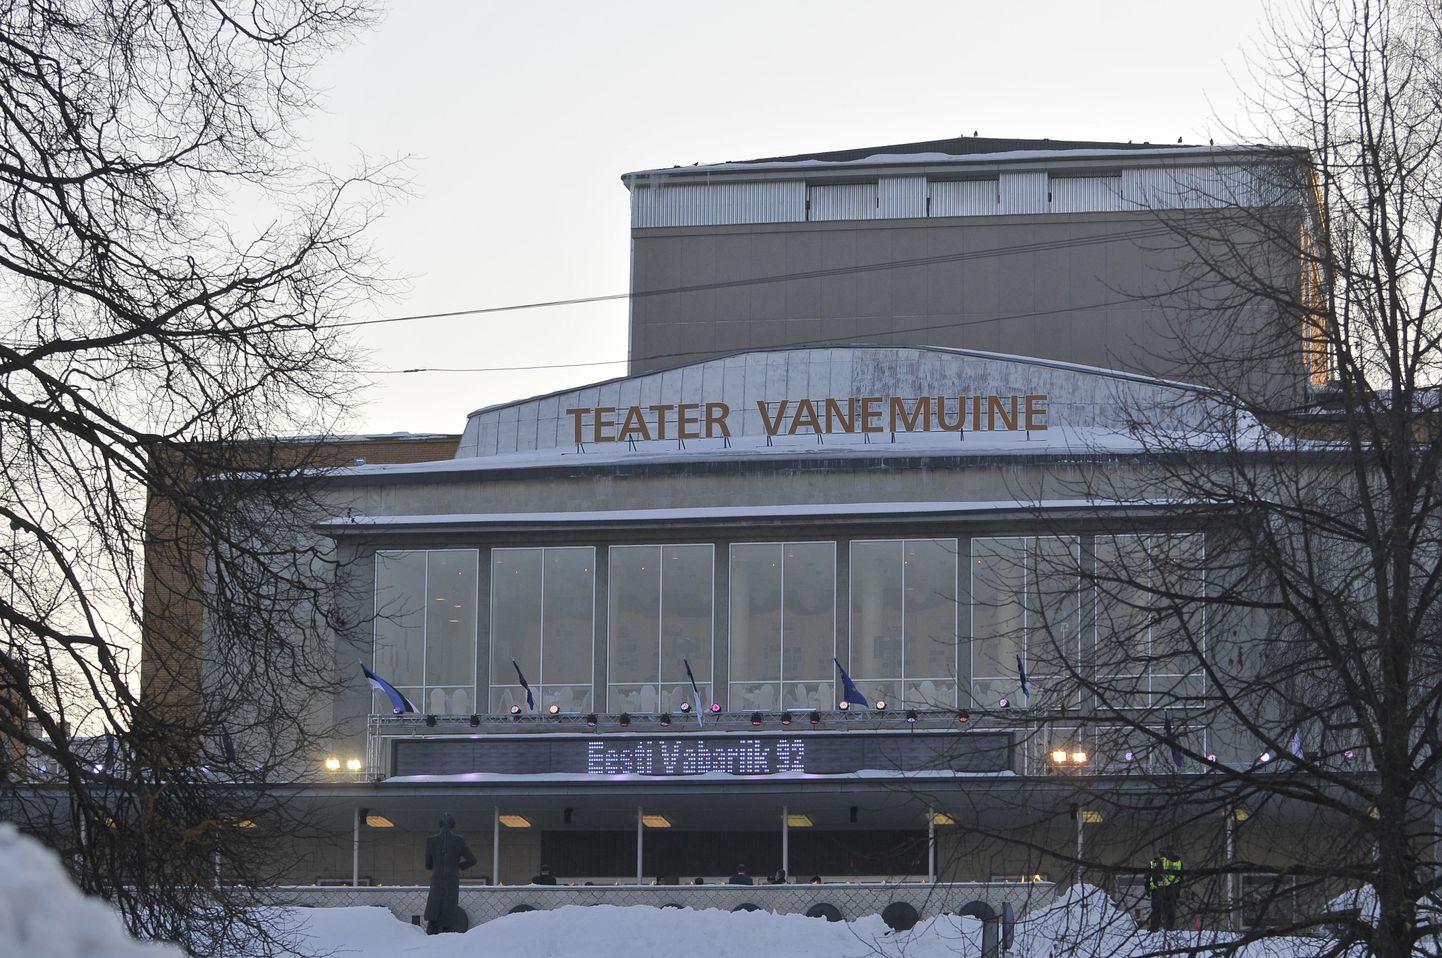 Pildil Vanemuise teater.